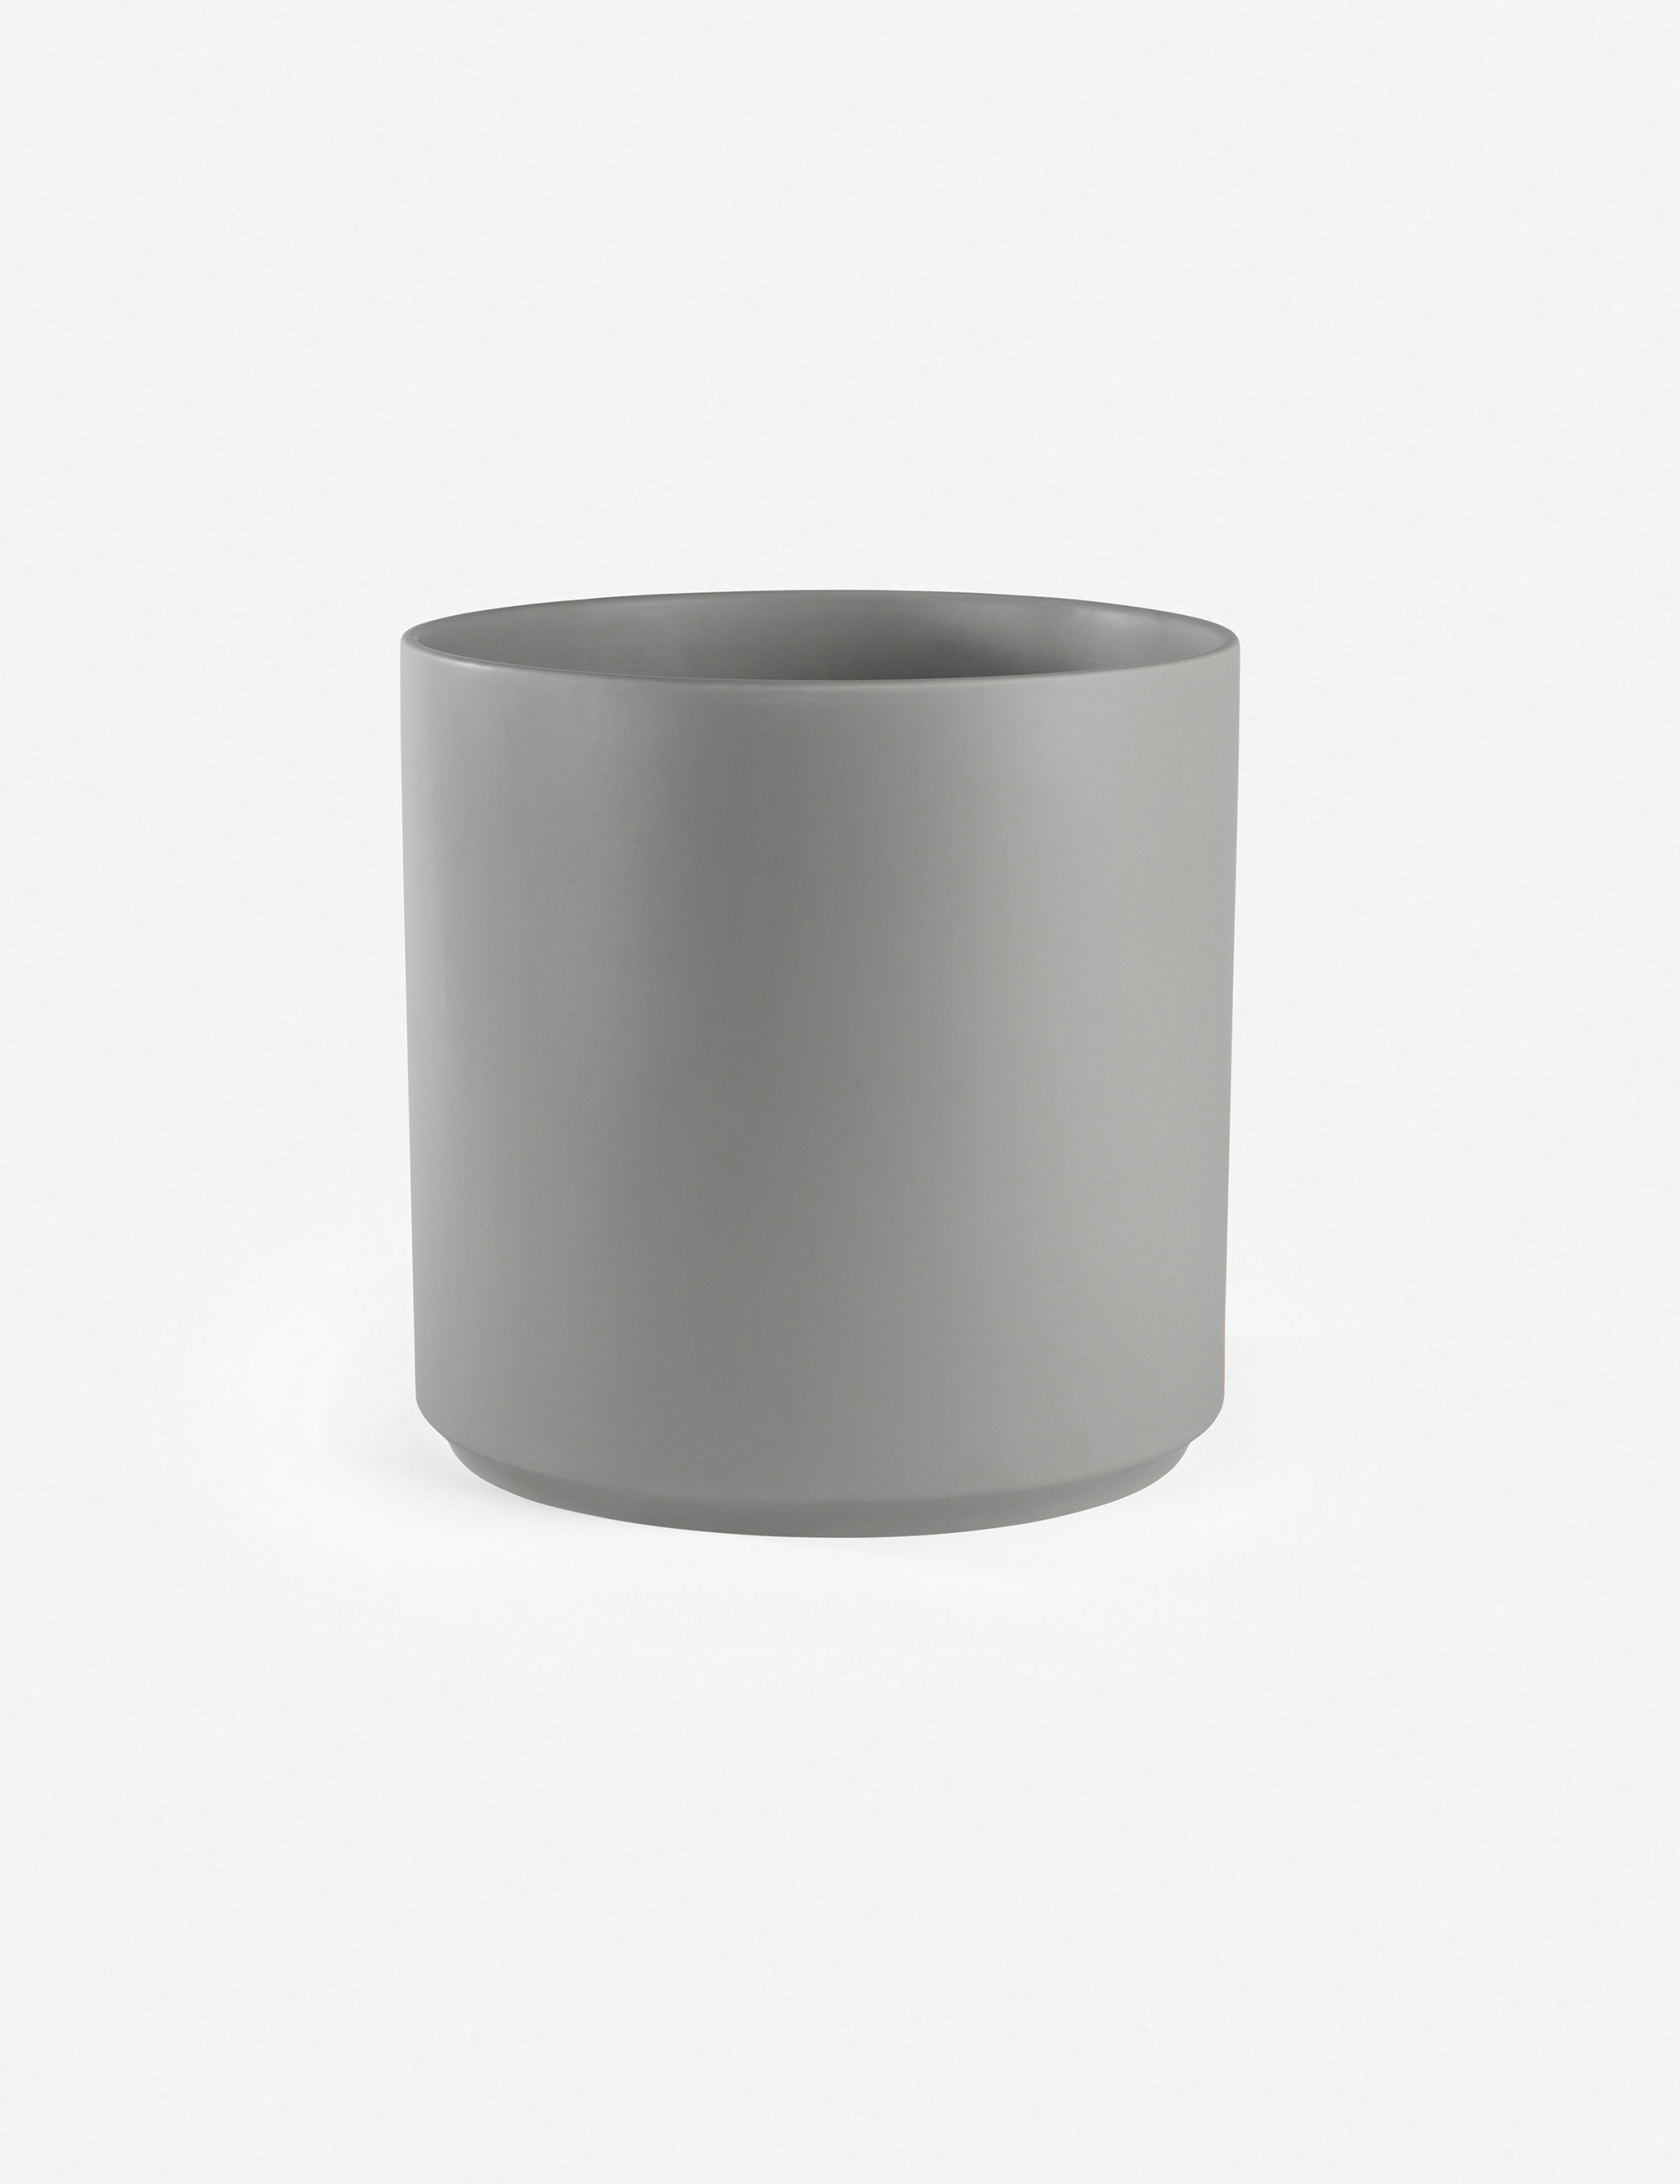 LBE Design Ceramic Planter, Gray 10"Dia x 9"H - Image 5